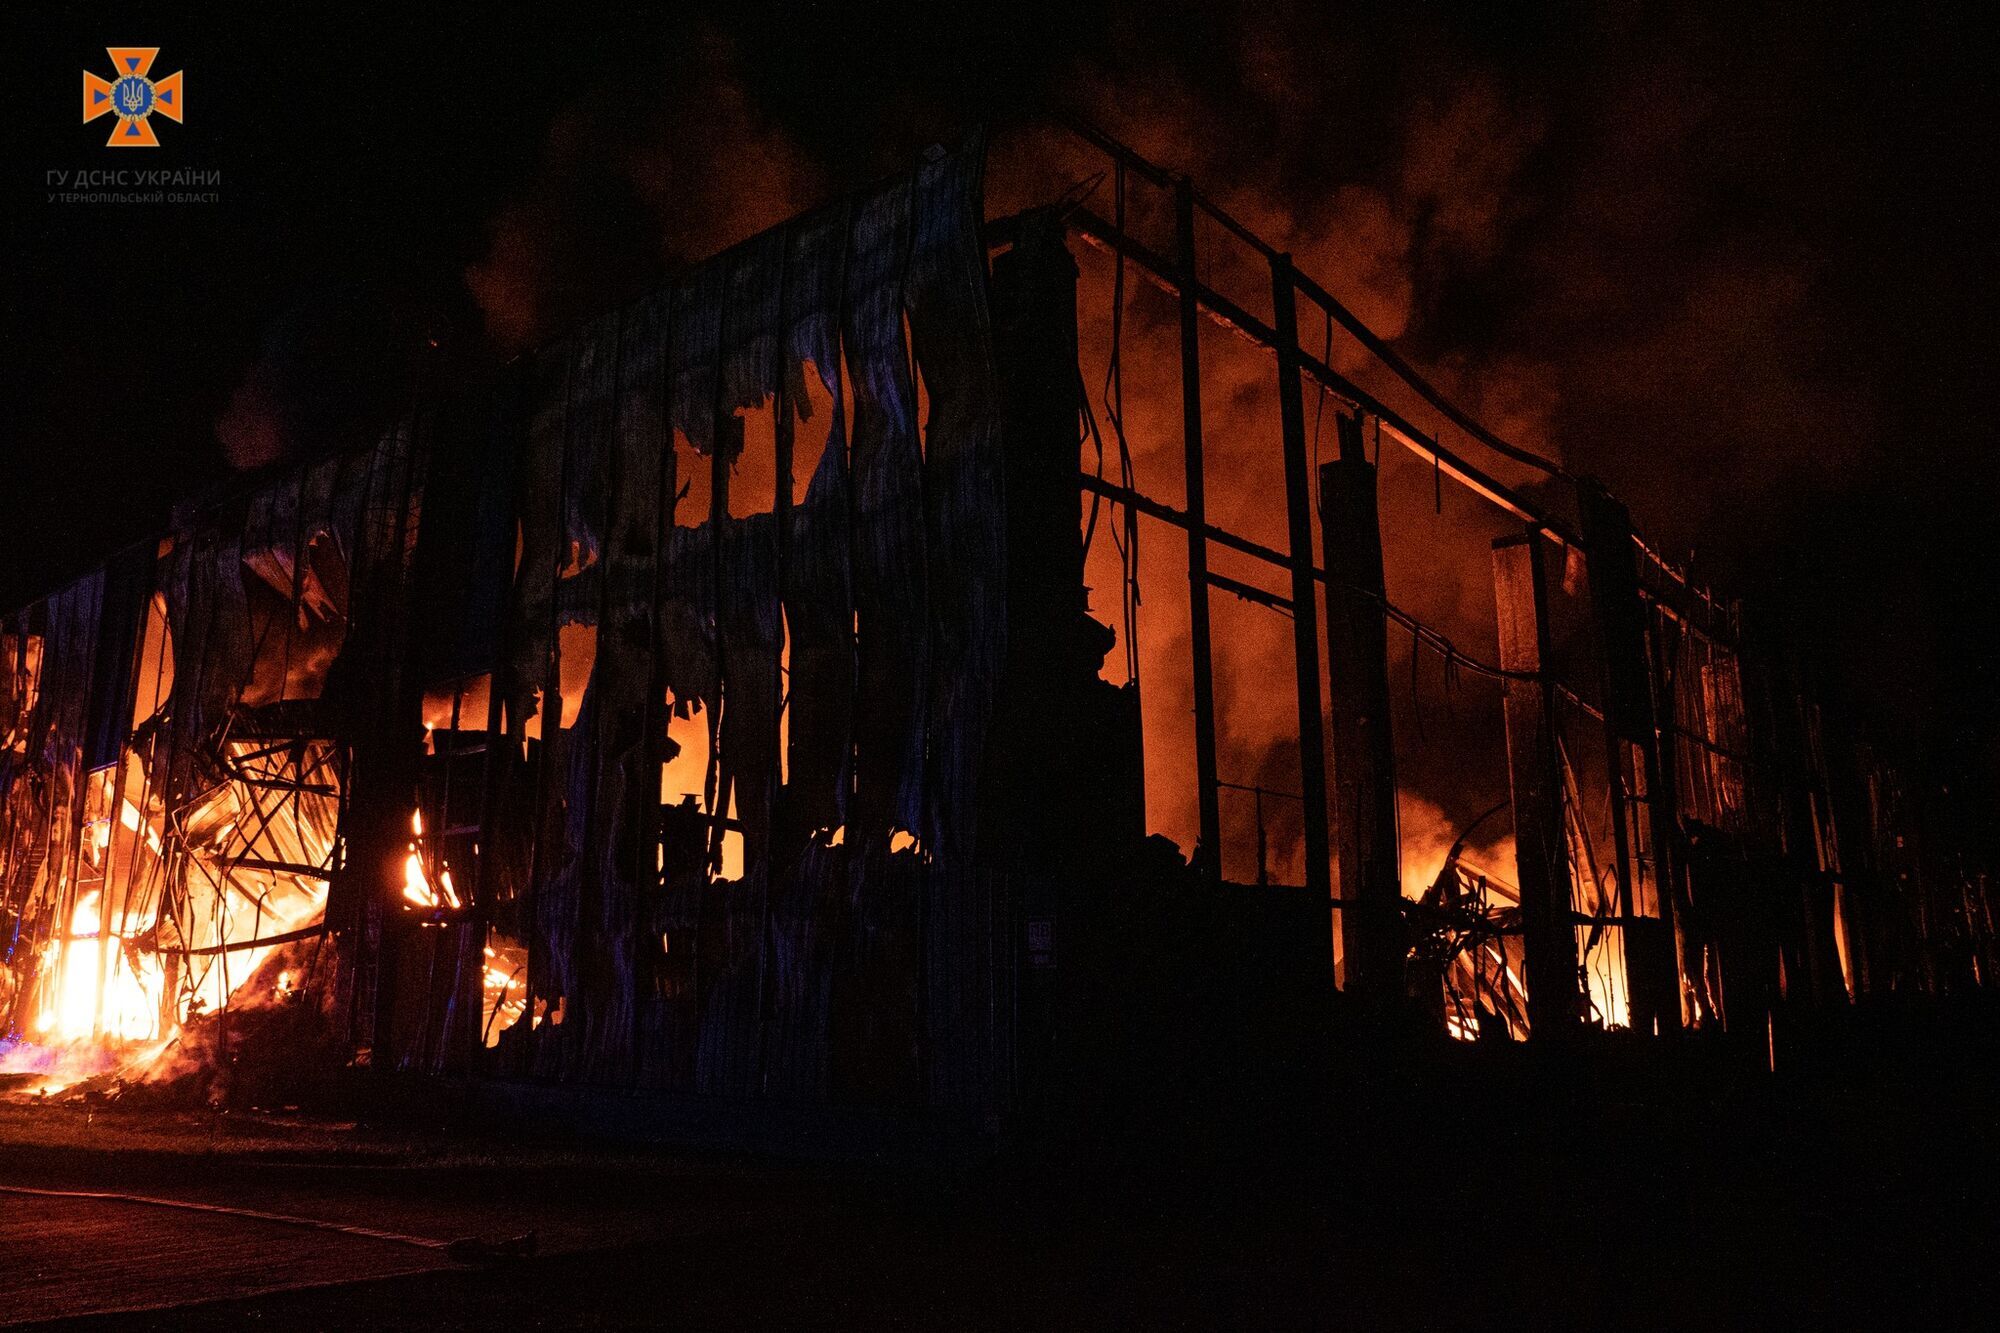 Пожежа у Тернополі: у місті горів завод, попередньо мова про підприємство Penoboard